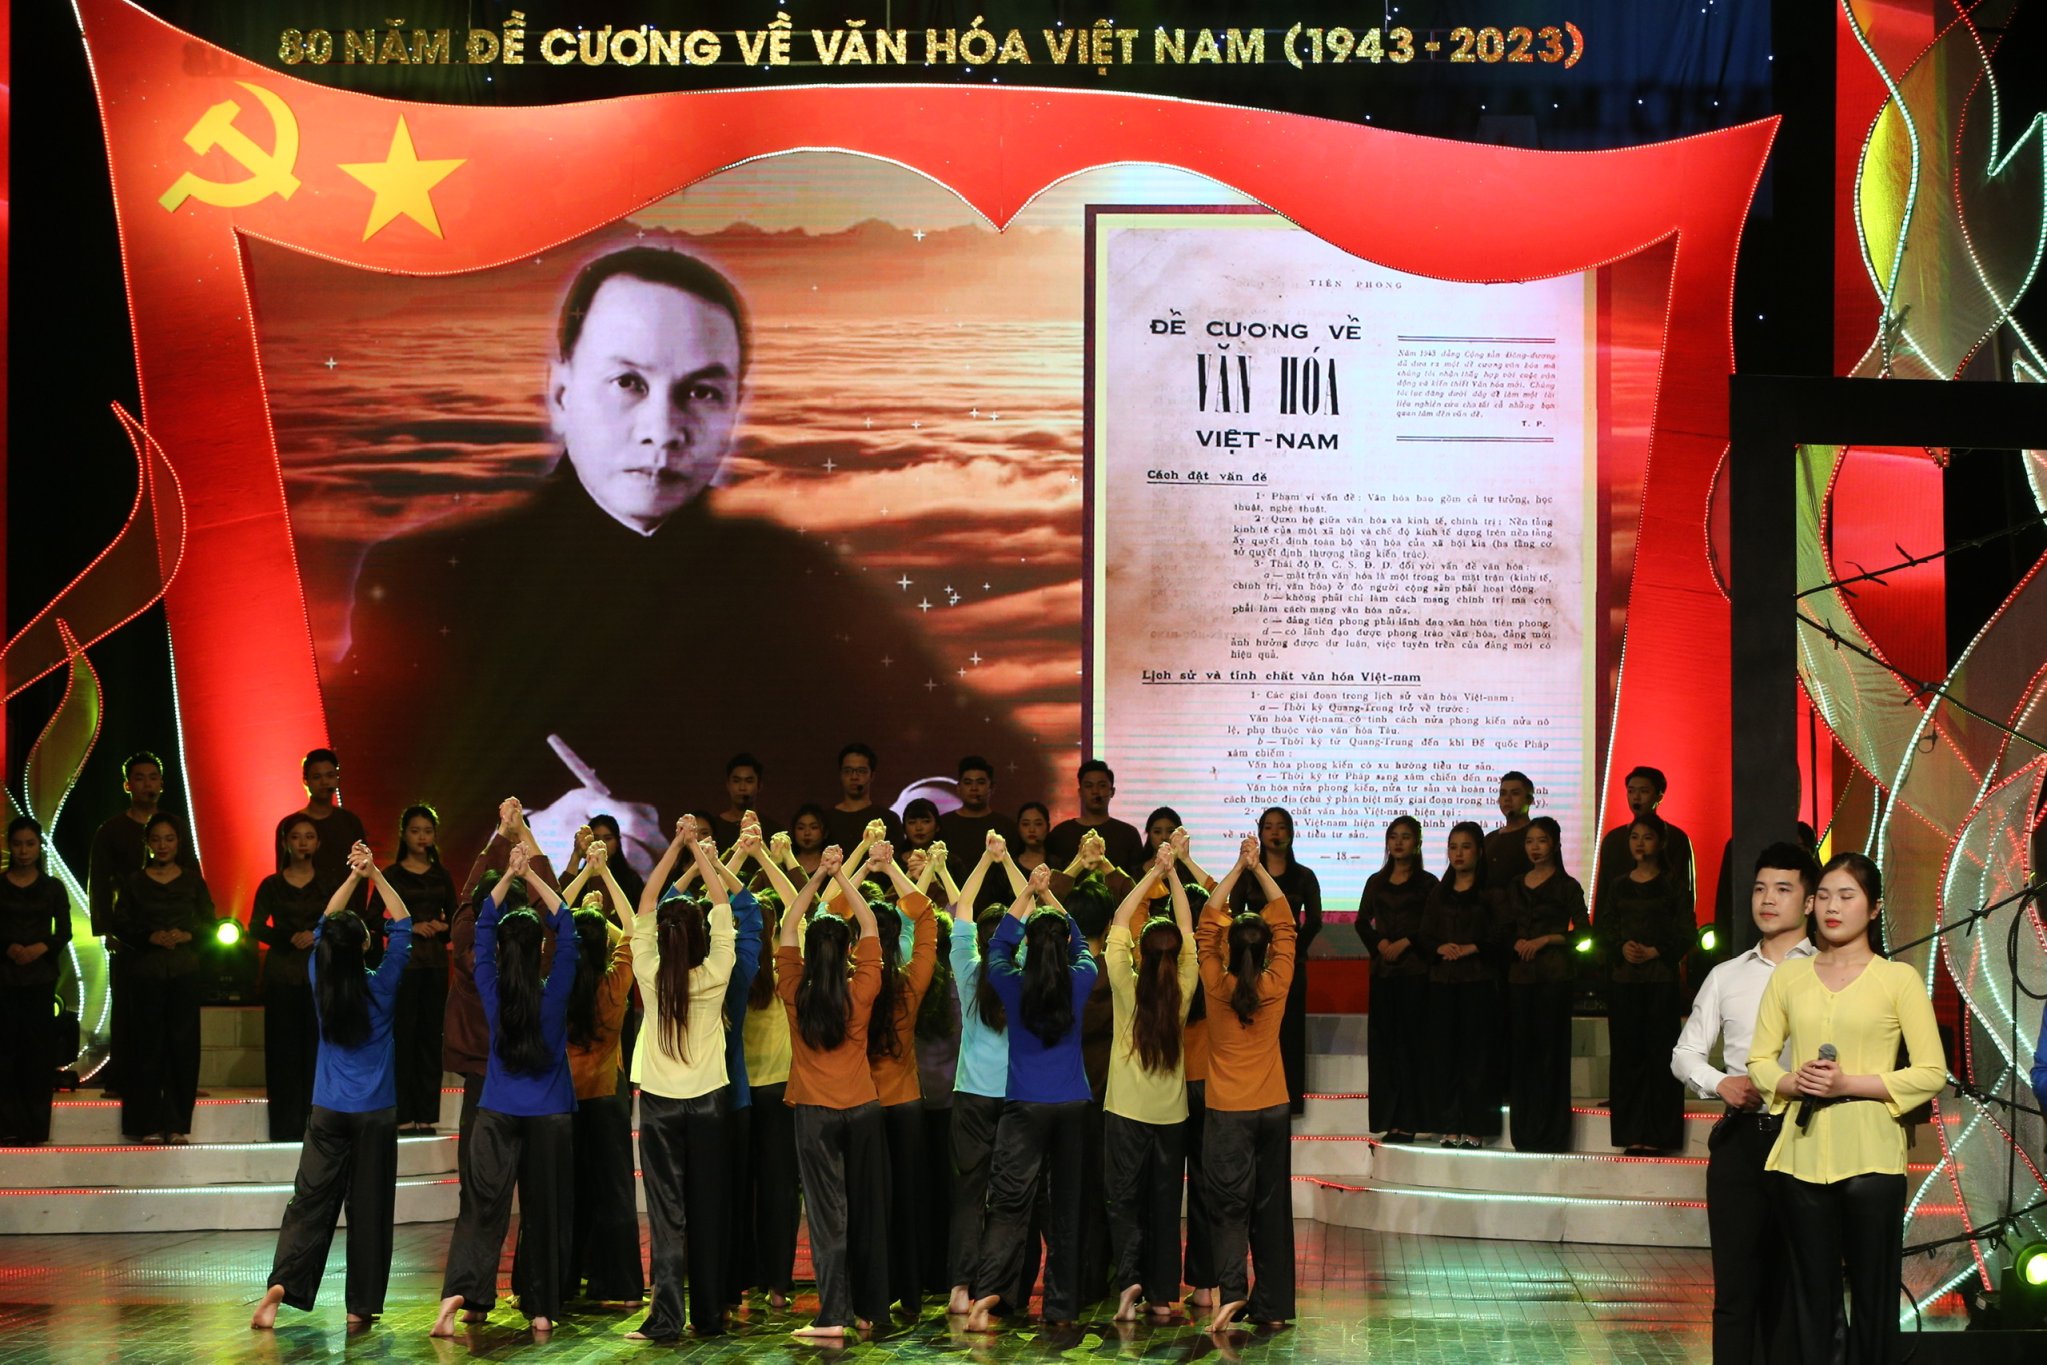 Nhìn lại 80 năm “Đề cương về văn hóa Việt Nam” bằng ngôn ngữ nghệ thuật - 8